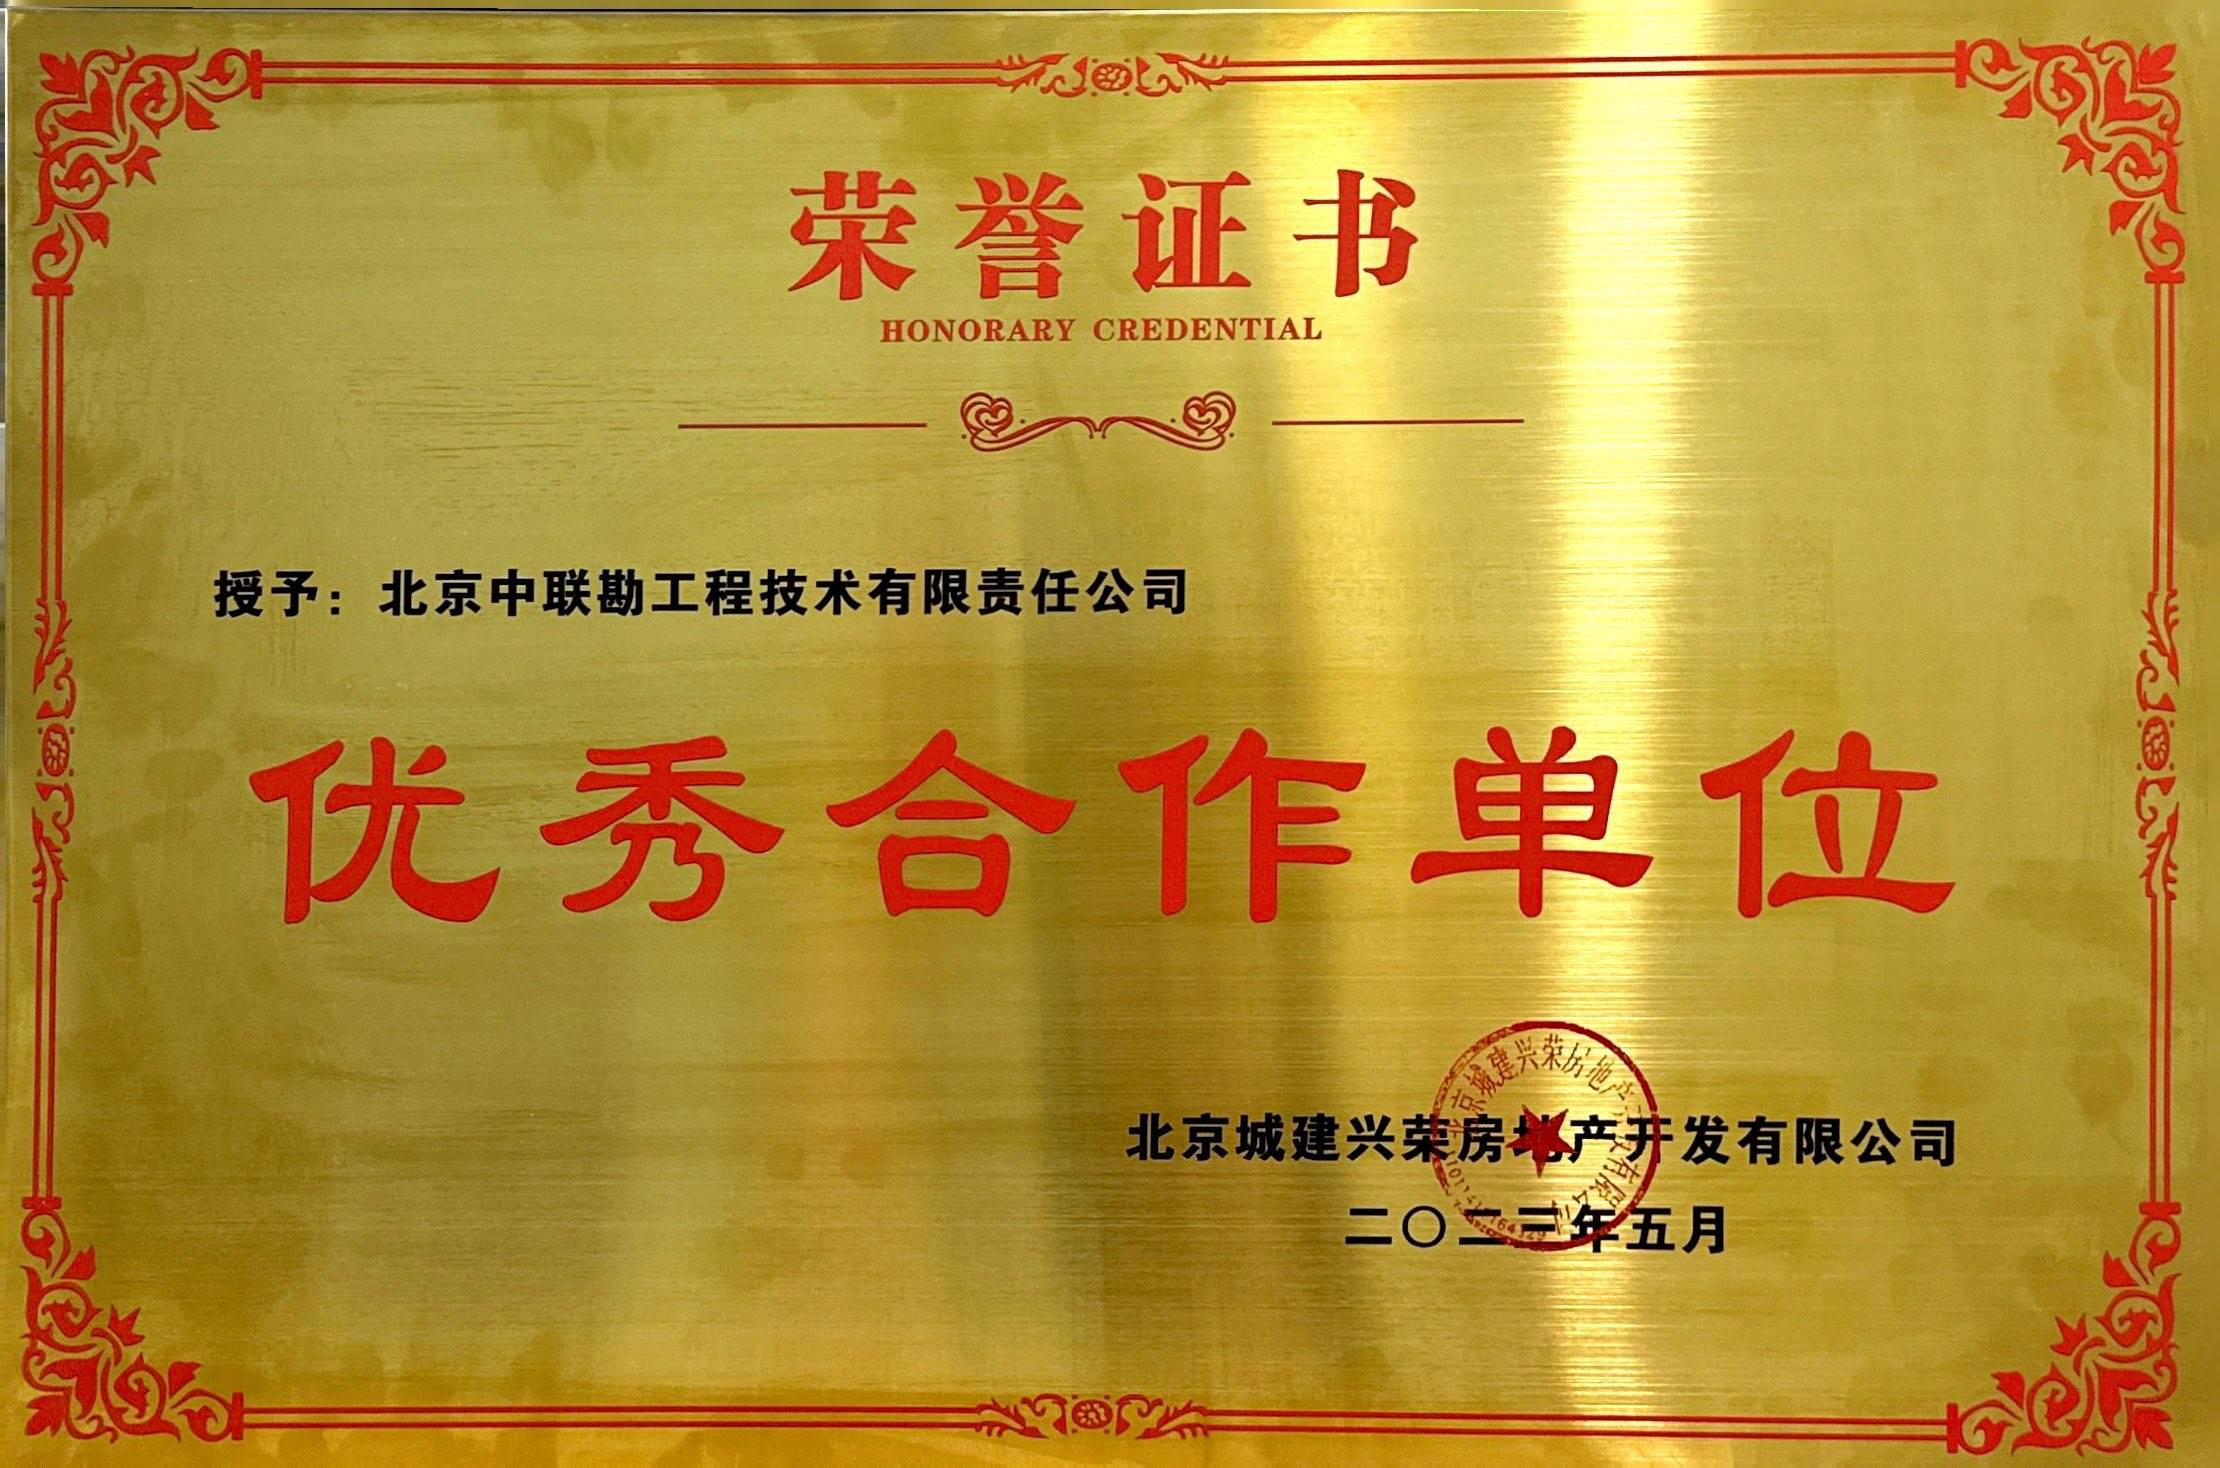 被北京城建兴荣房地产授予“优秀合作单位”